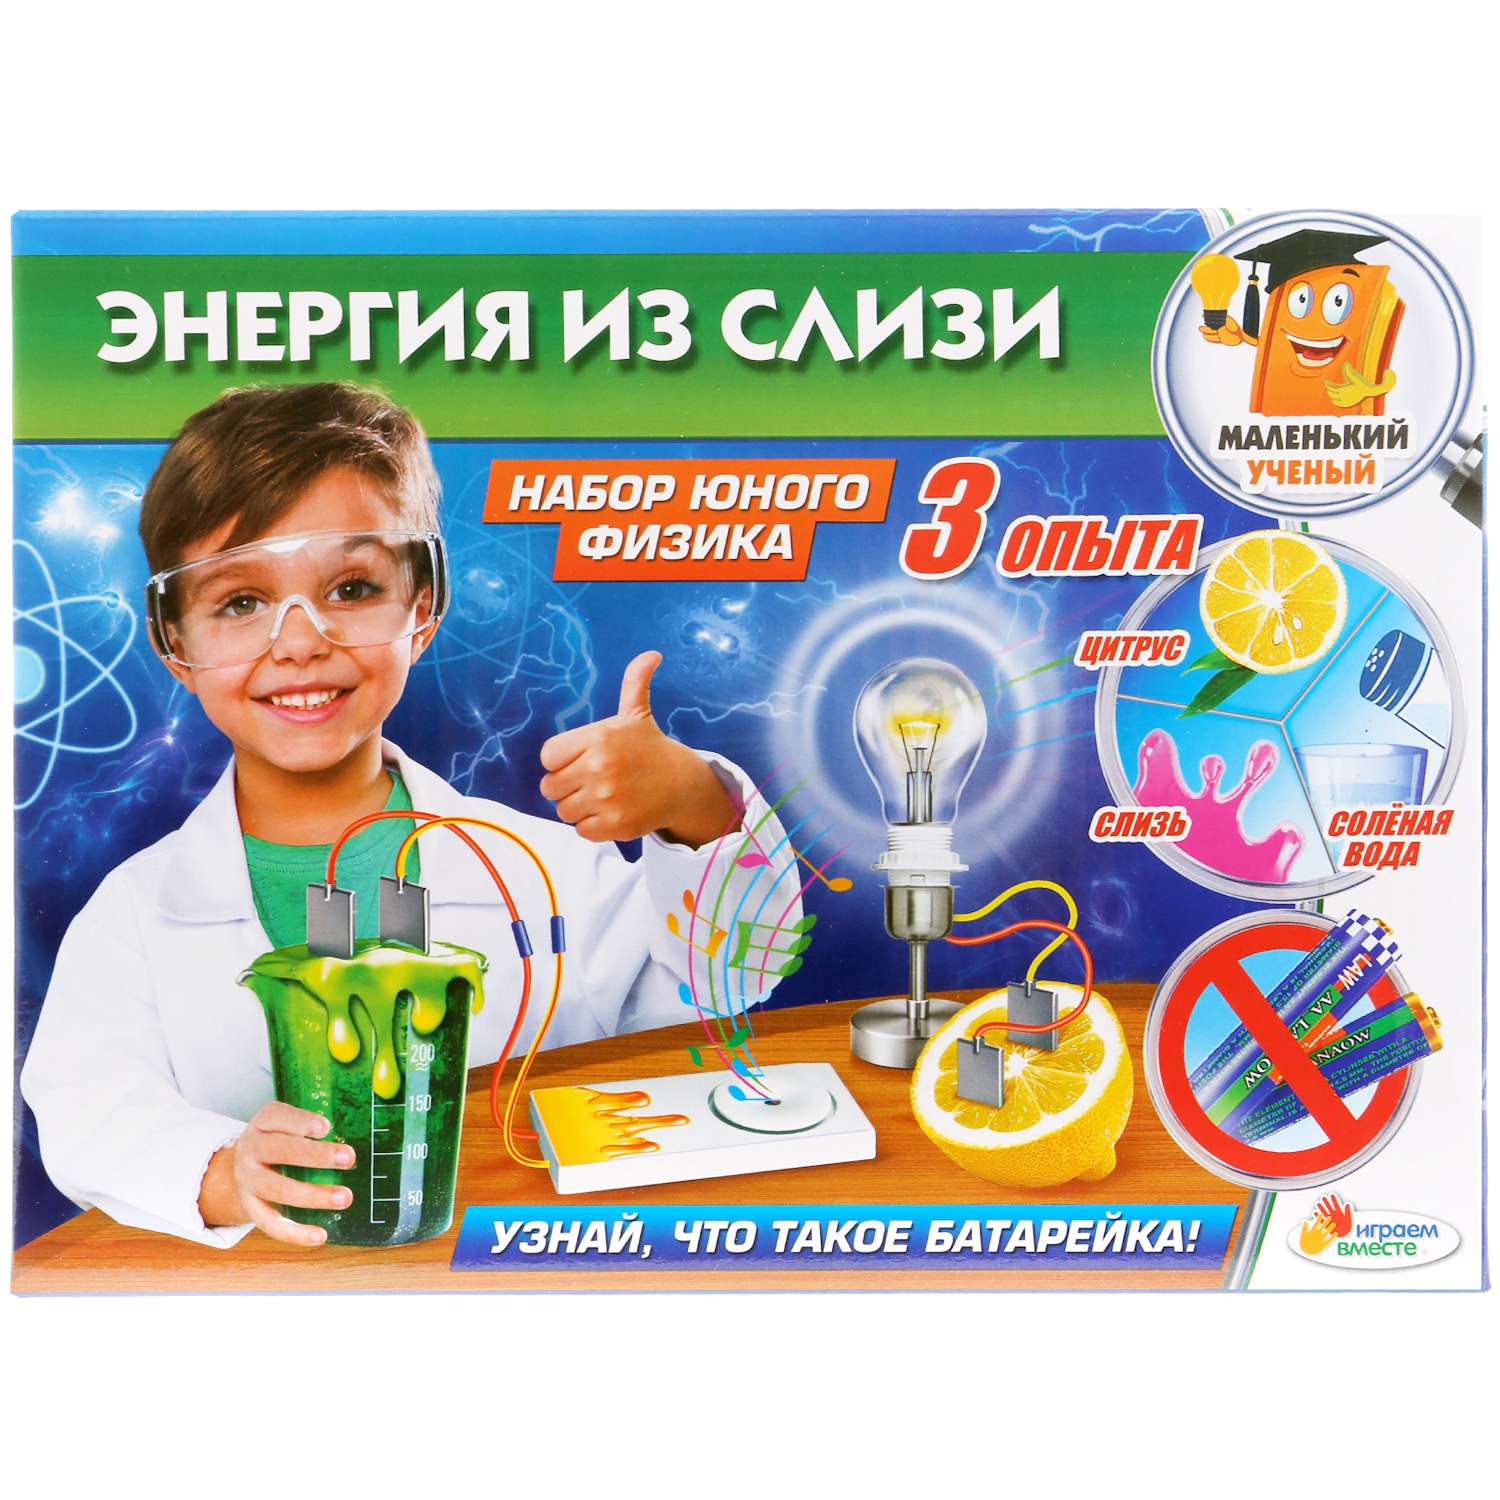 Москва опыты для детей. Детский набор для опытов. Набор экспериментов для детей. Наборы для опытов и экспериментов для детей. Набор юного физика.